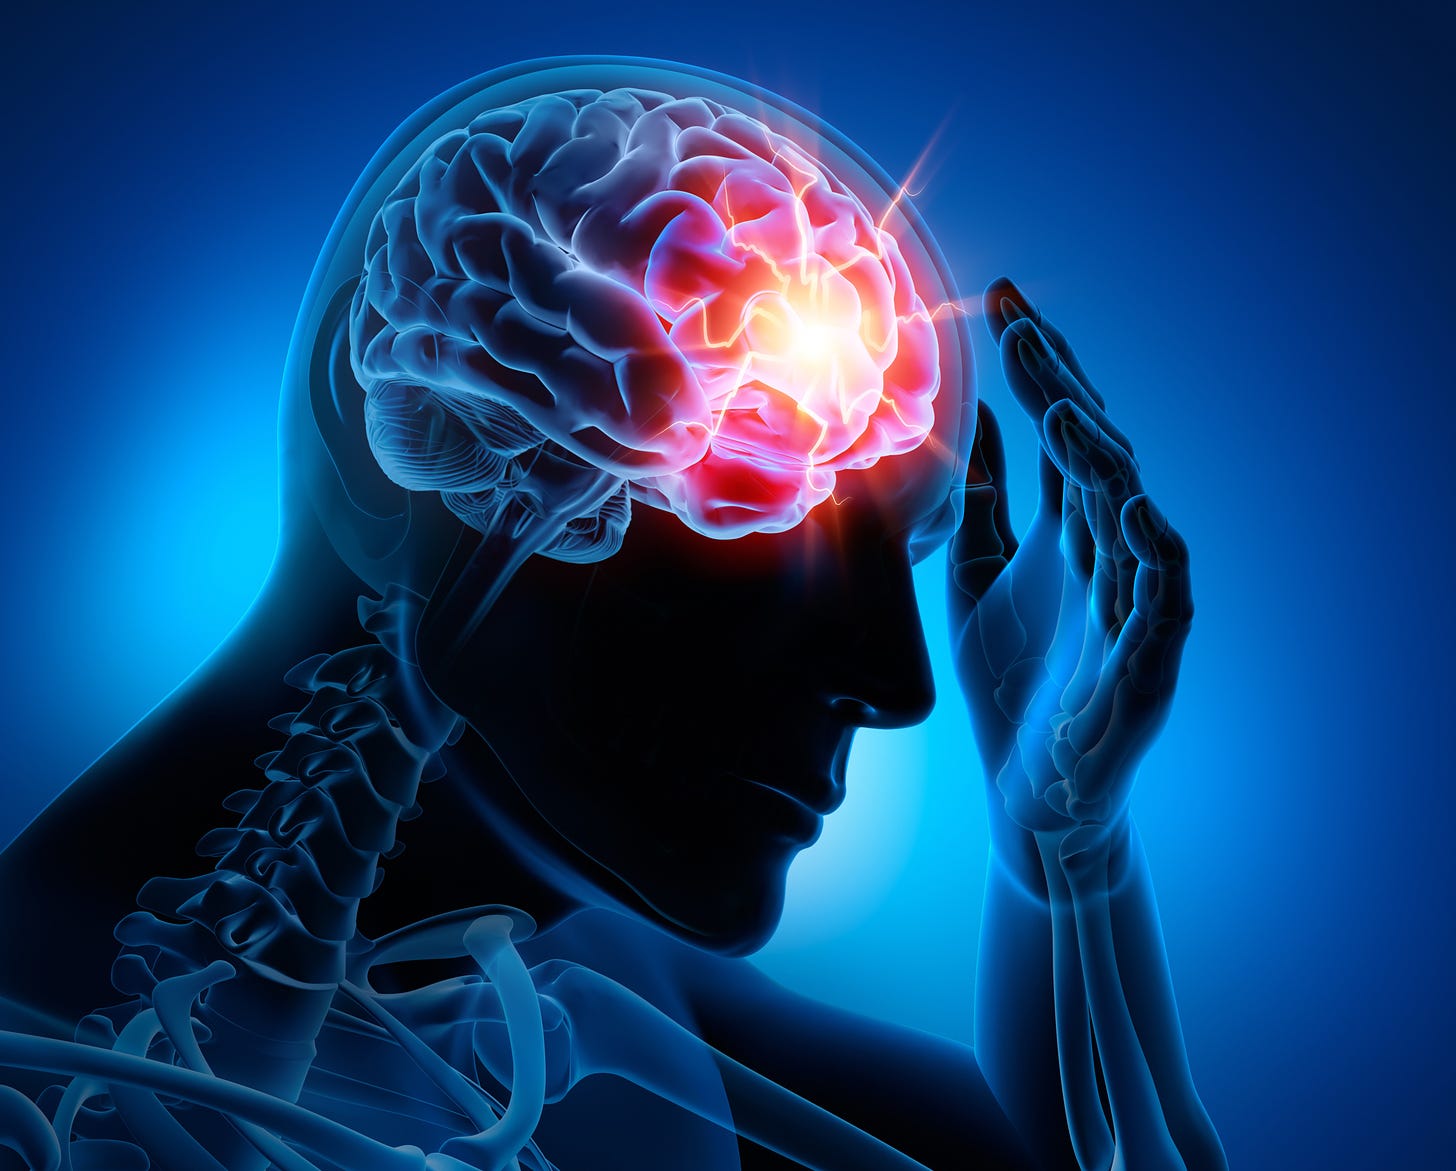 Figura humanoide transparente com o cerebro evidente e luzes vermelhas na parte frontal 